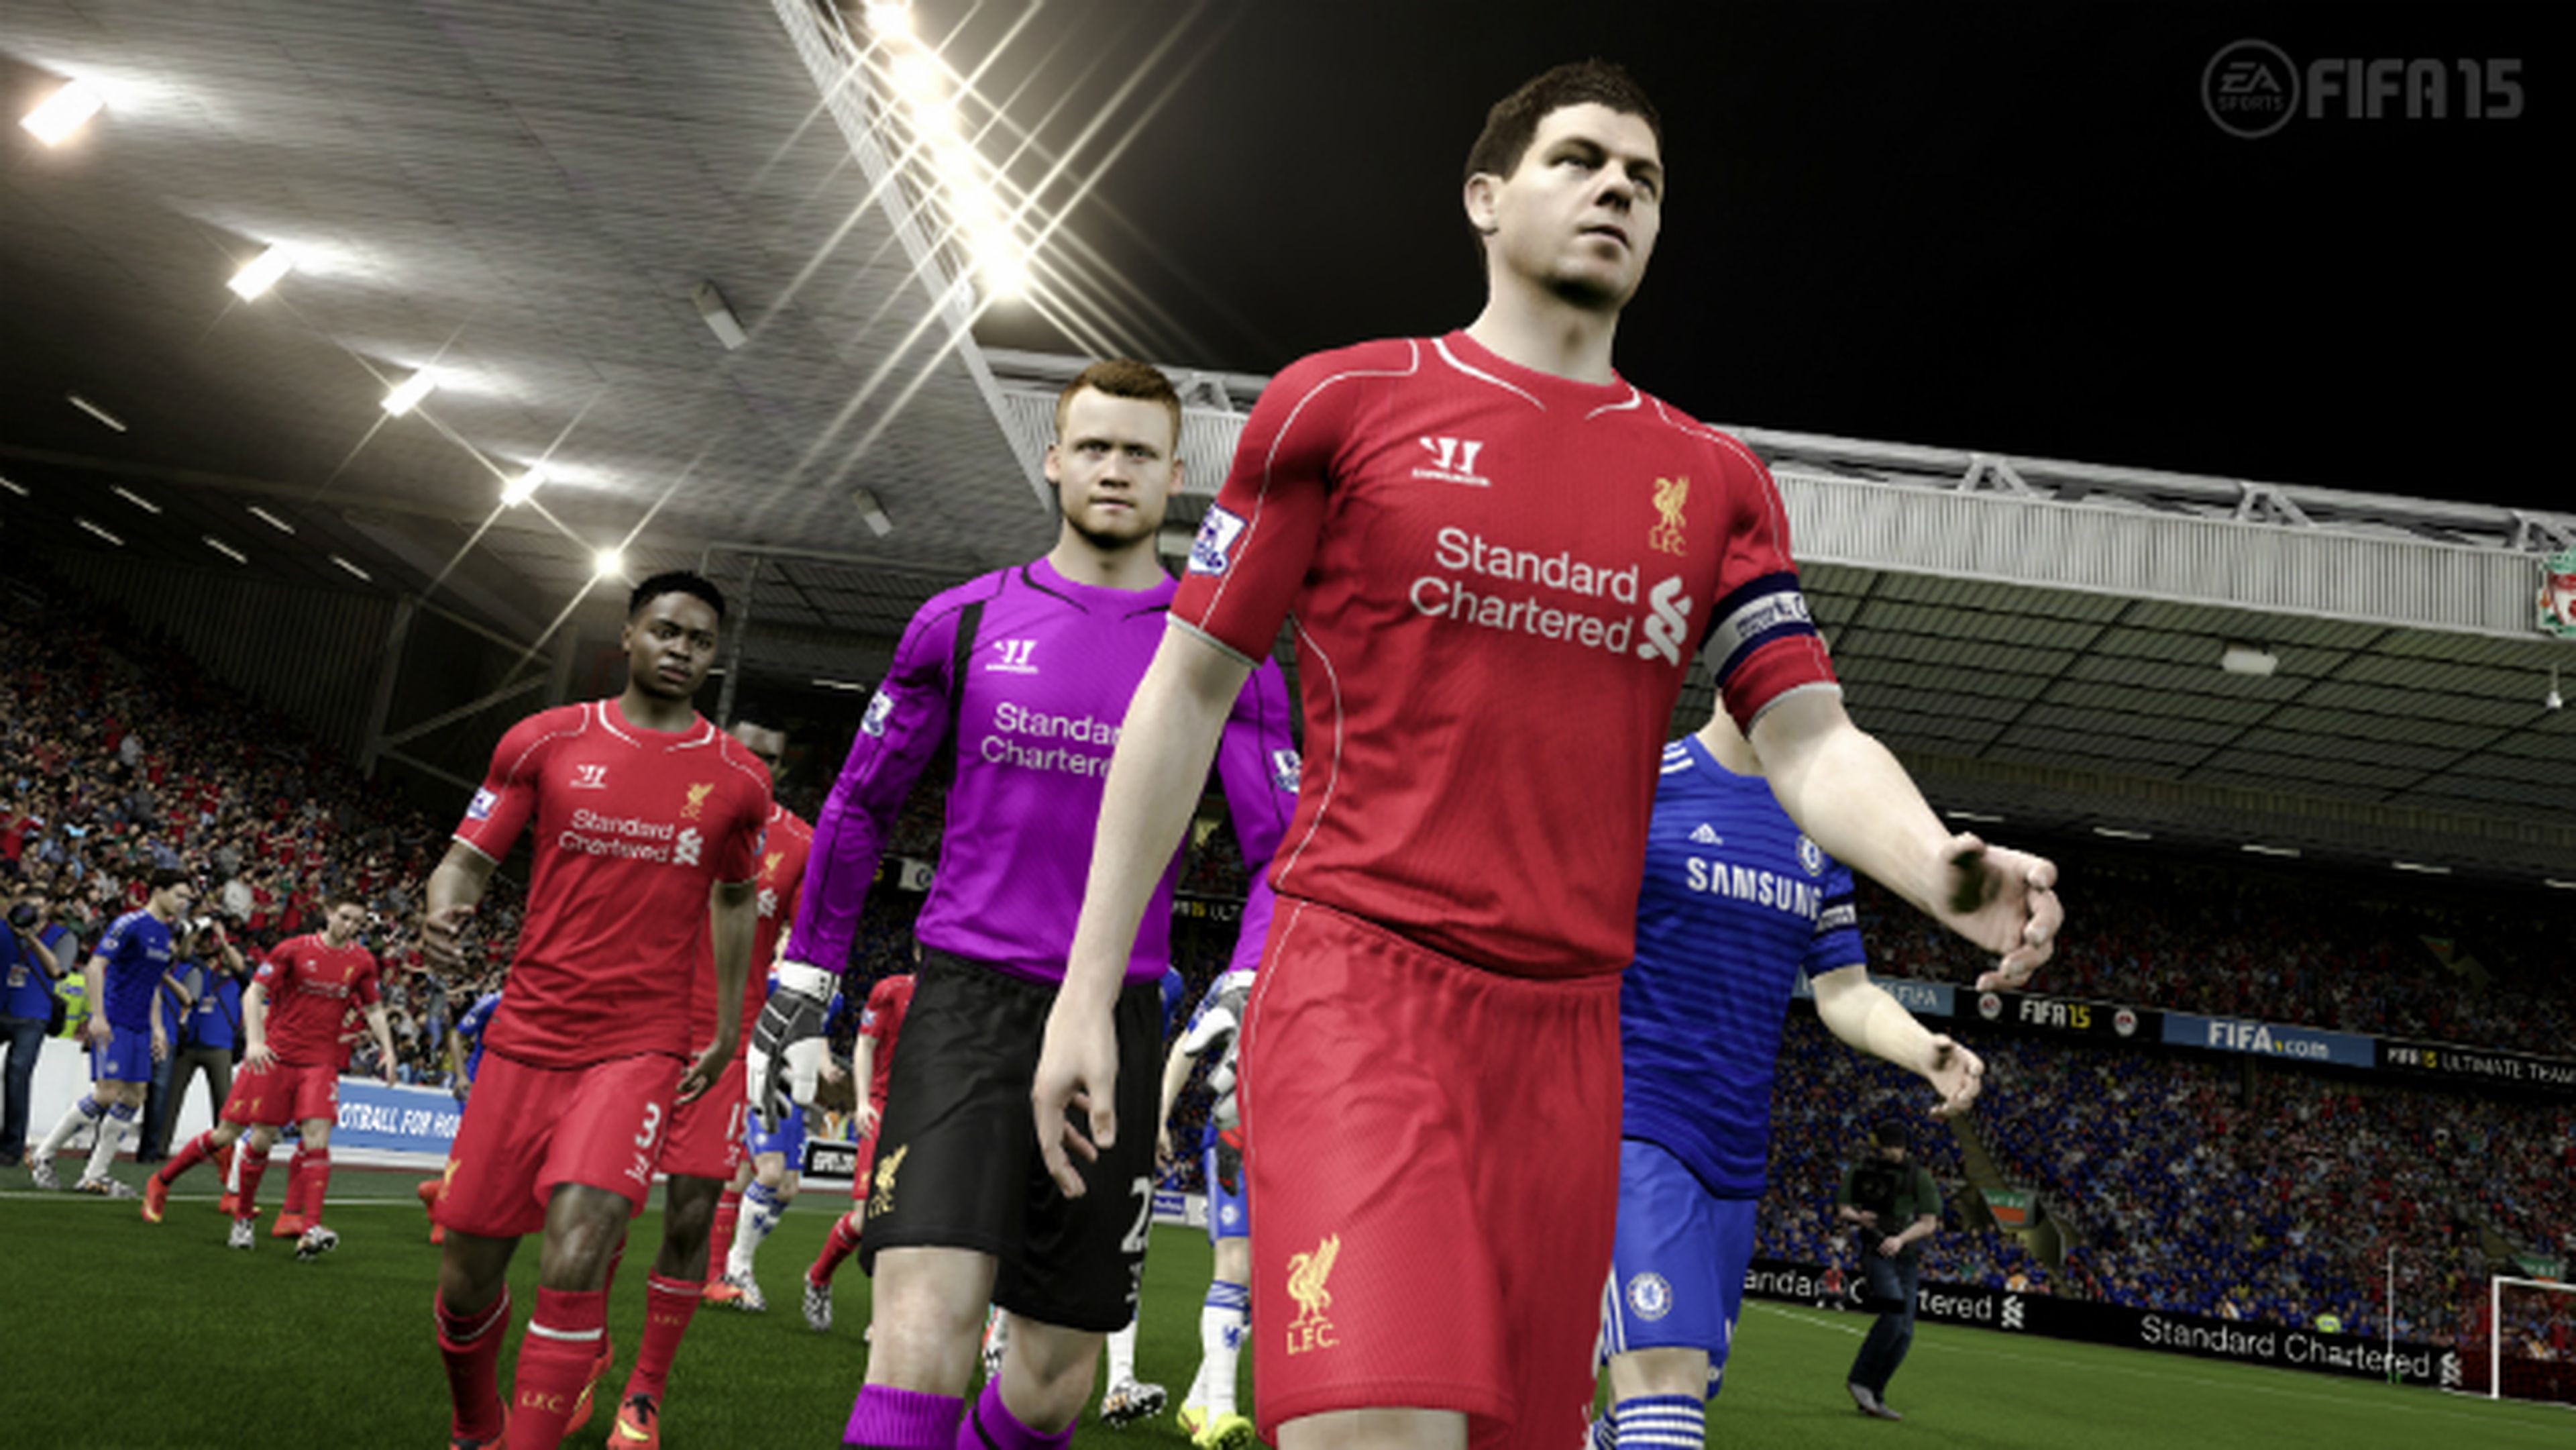 Ya disponible la demo de FIFA 15 en Xbox One